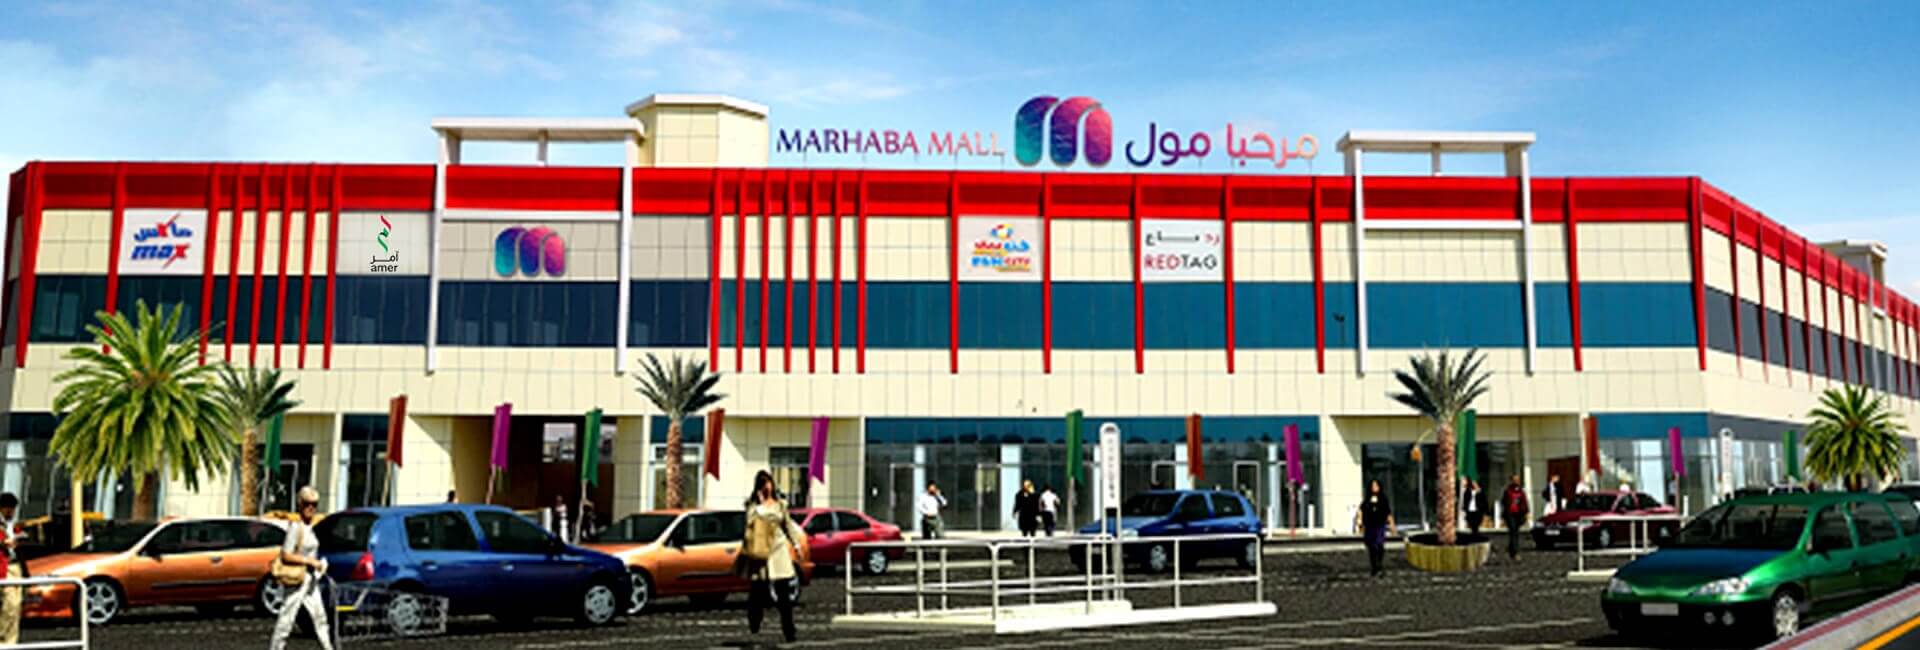 Marhaba mall